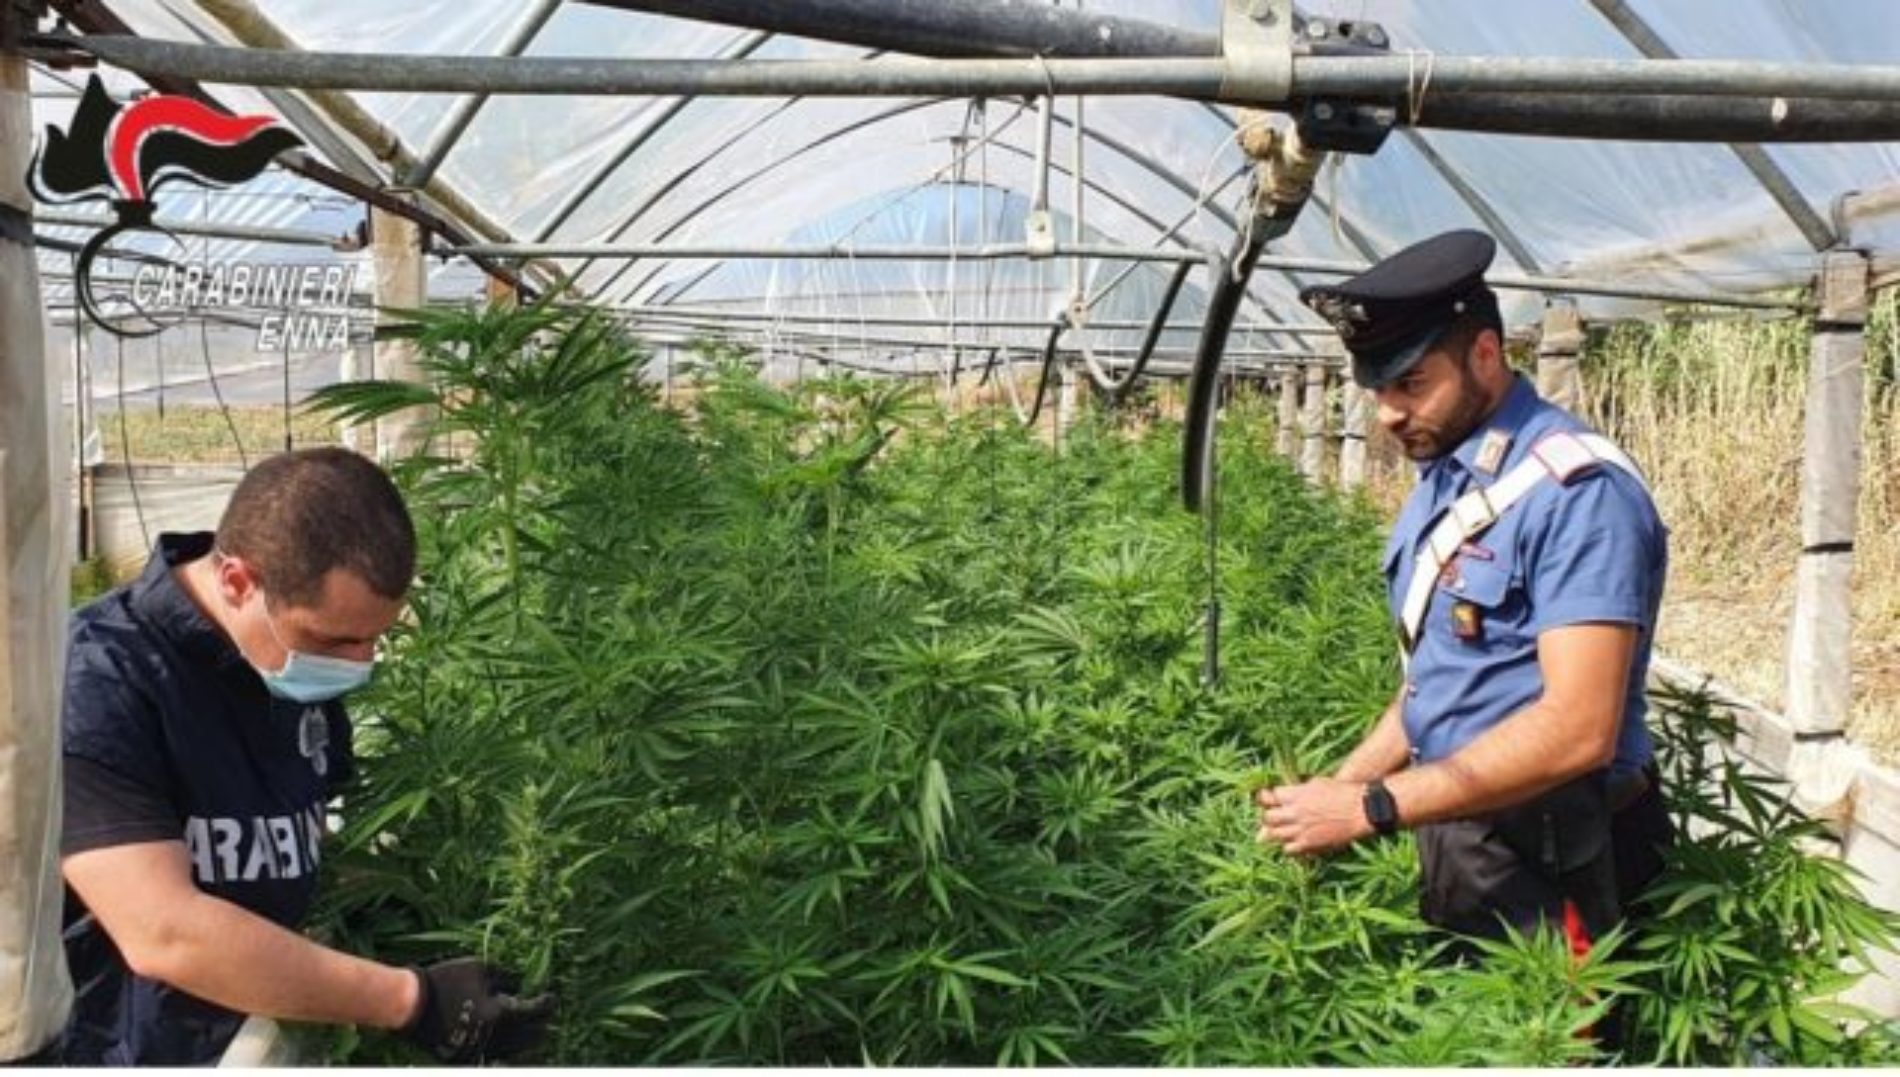 Piazza Armerina Un uomo di 48 anni è stato arrestato per il reato di coltivazione illecita di sostanze stupefacenti. Aveva allestito una serra con più di 300 piante di marijuana.